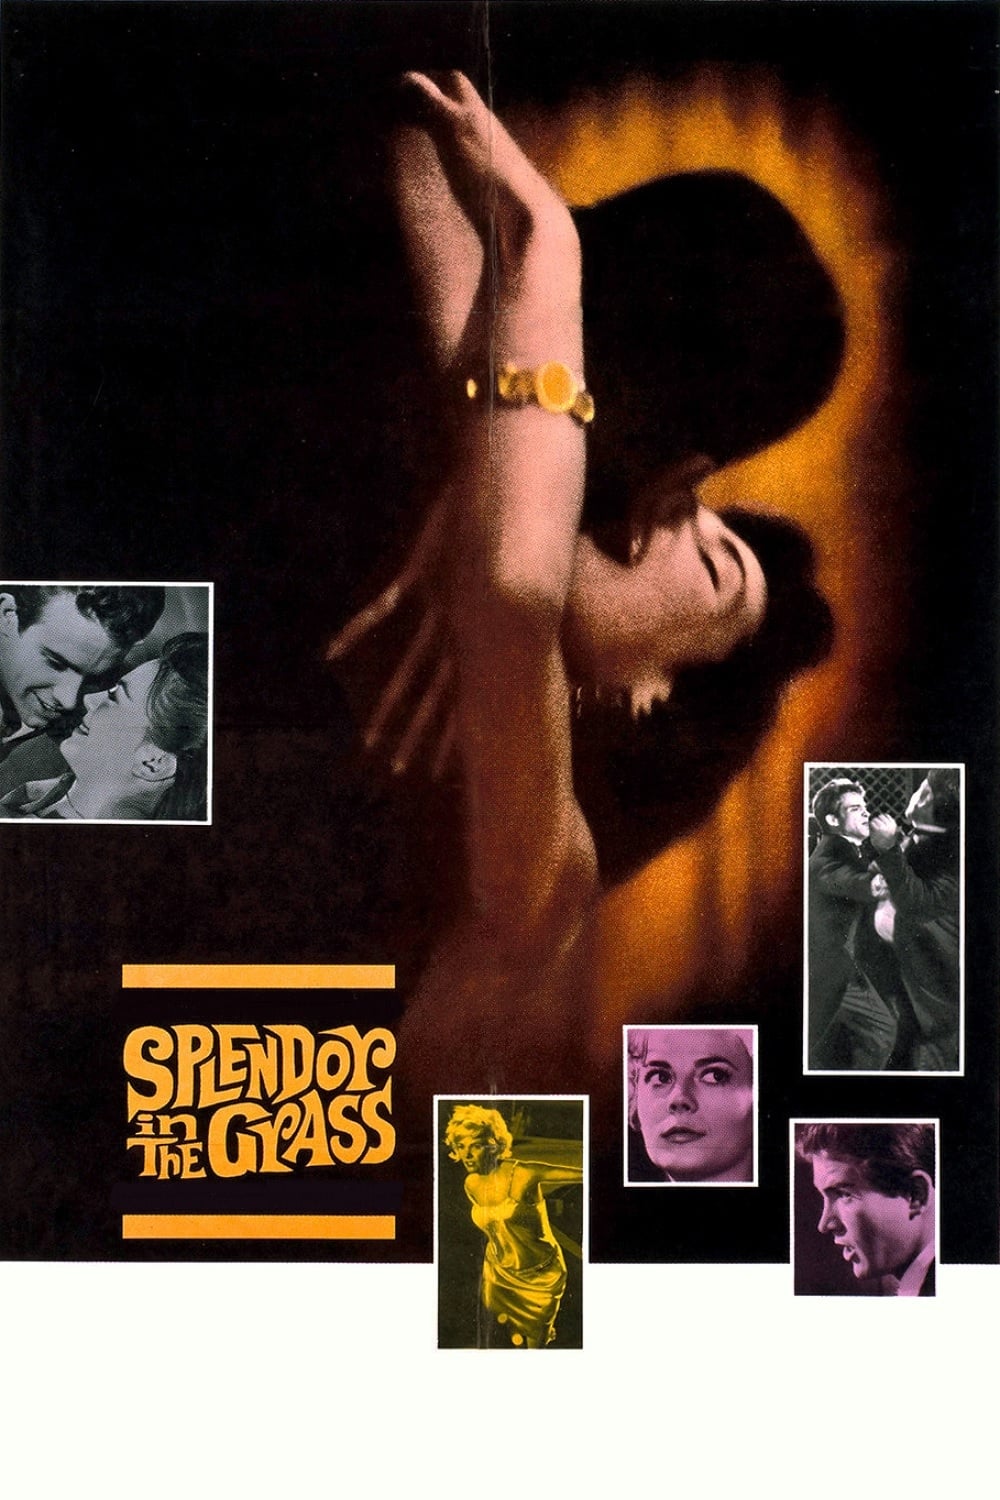 Clamor do Sexo (1961)